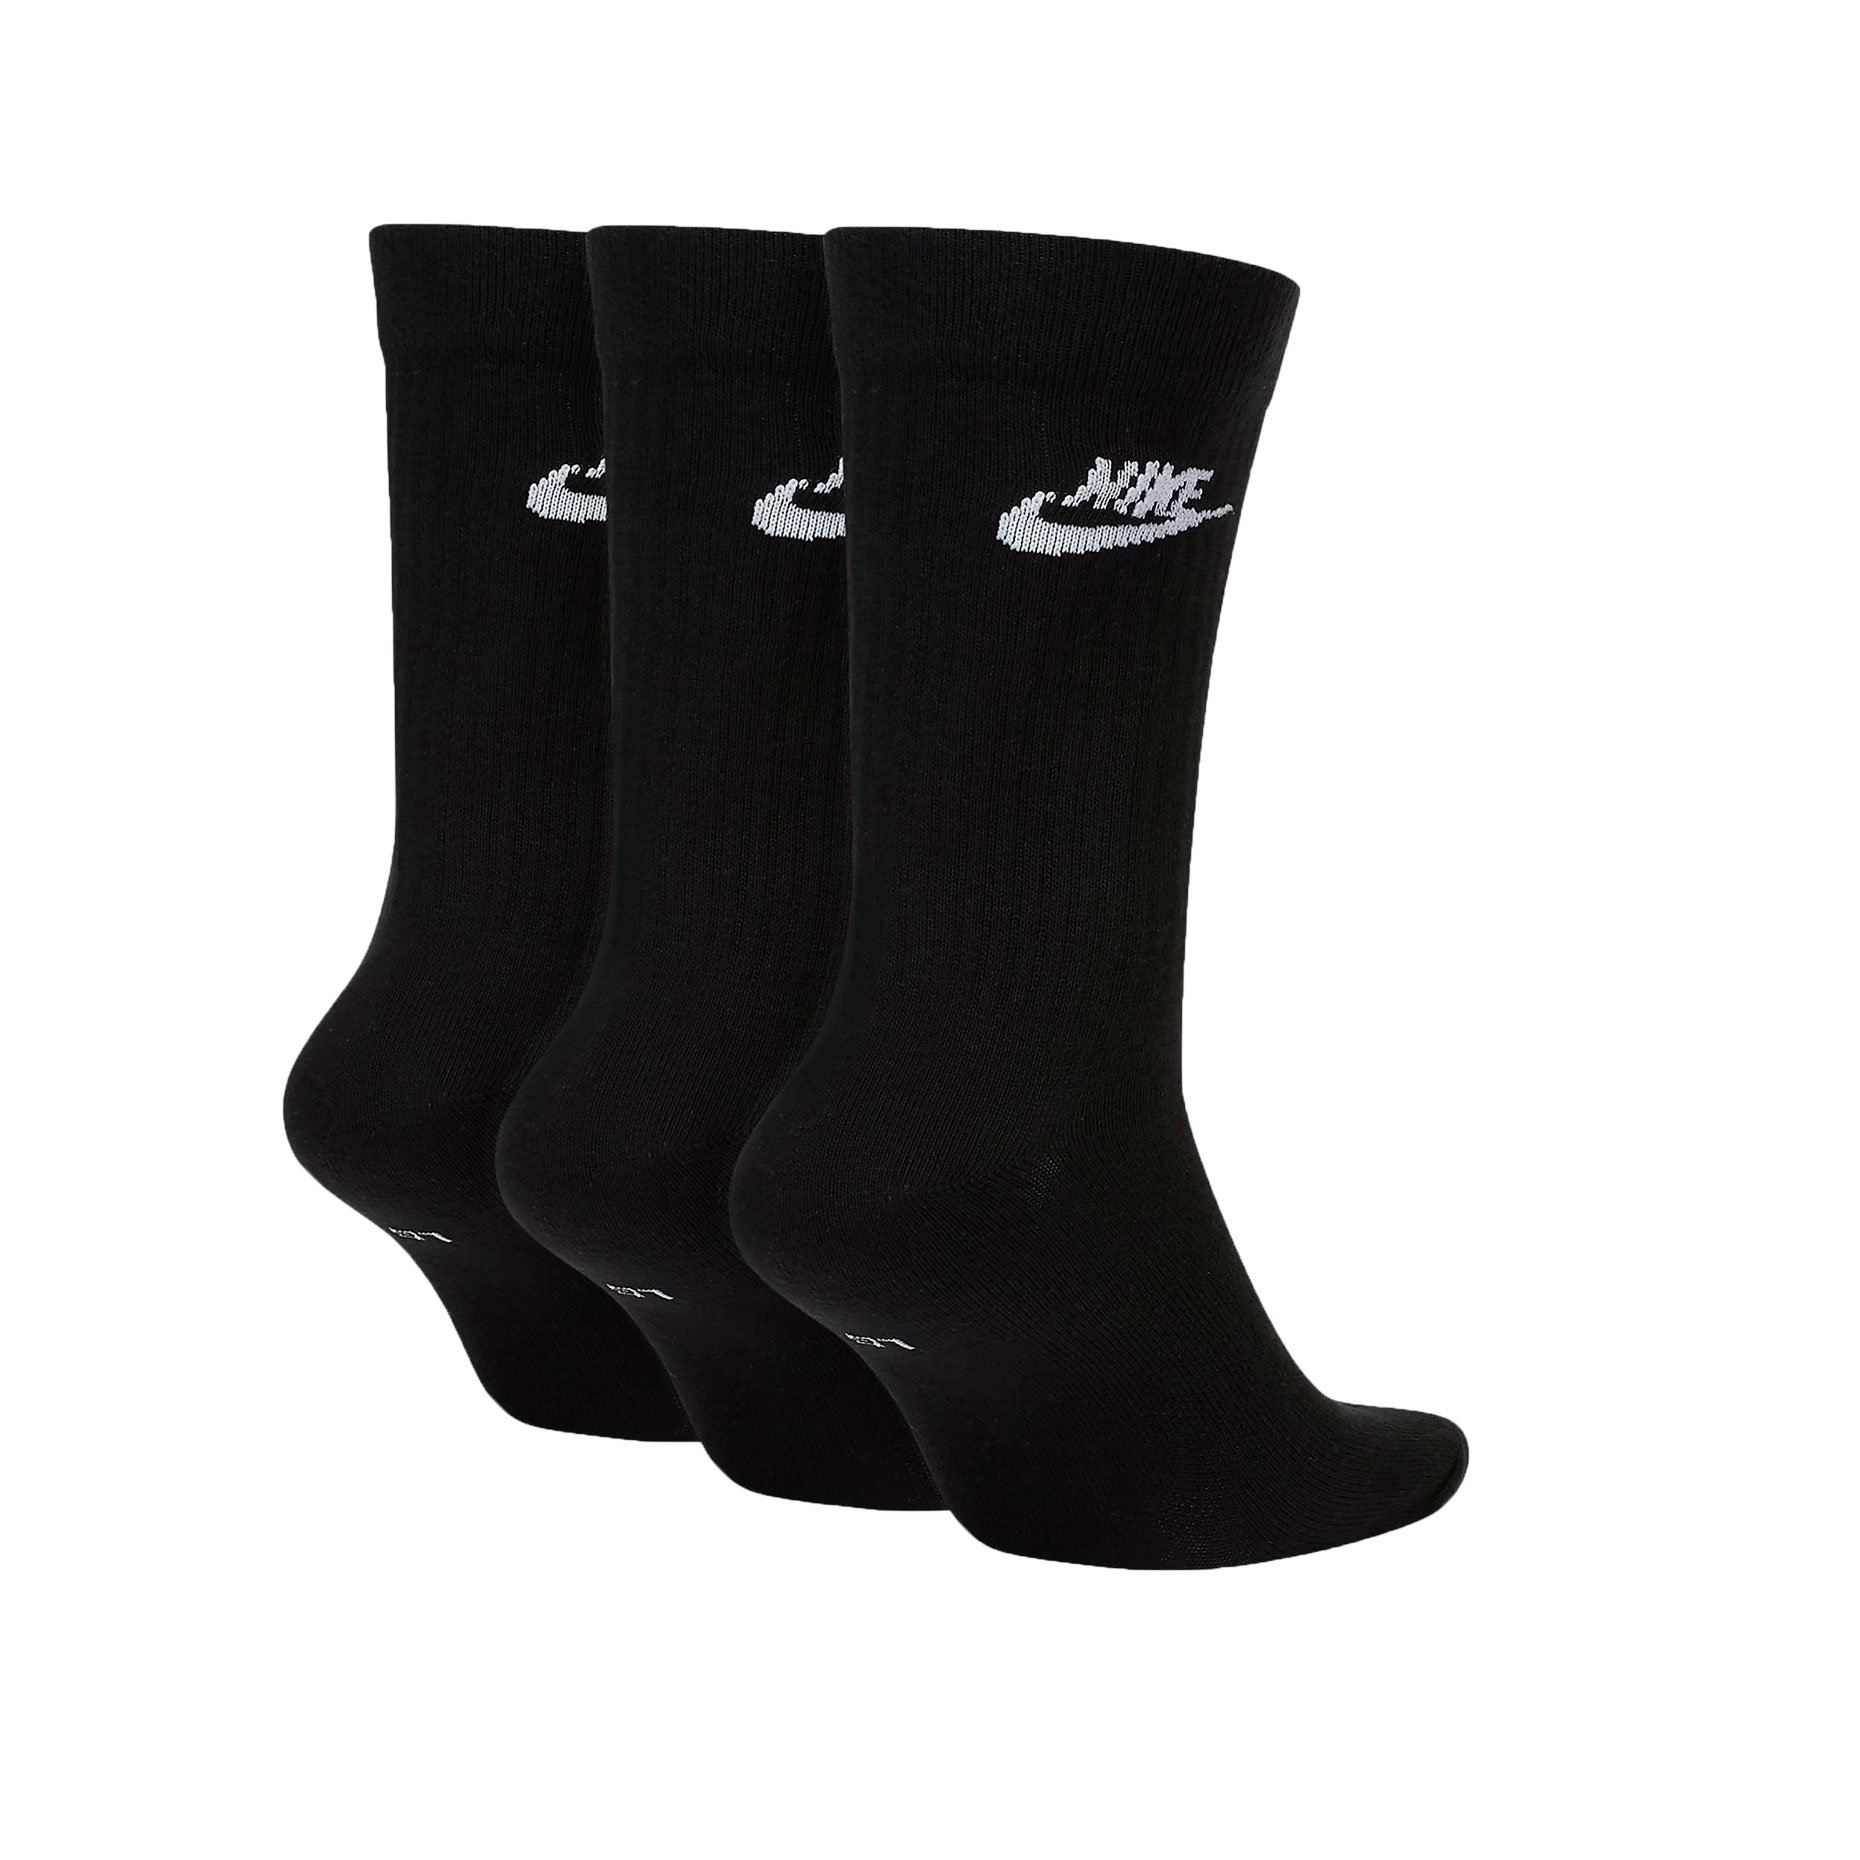 Комплект носков Nike Sportswear Everyday Essential (3 пары)